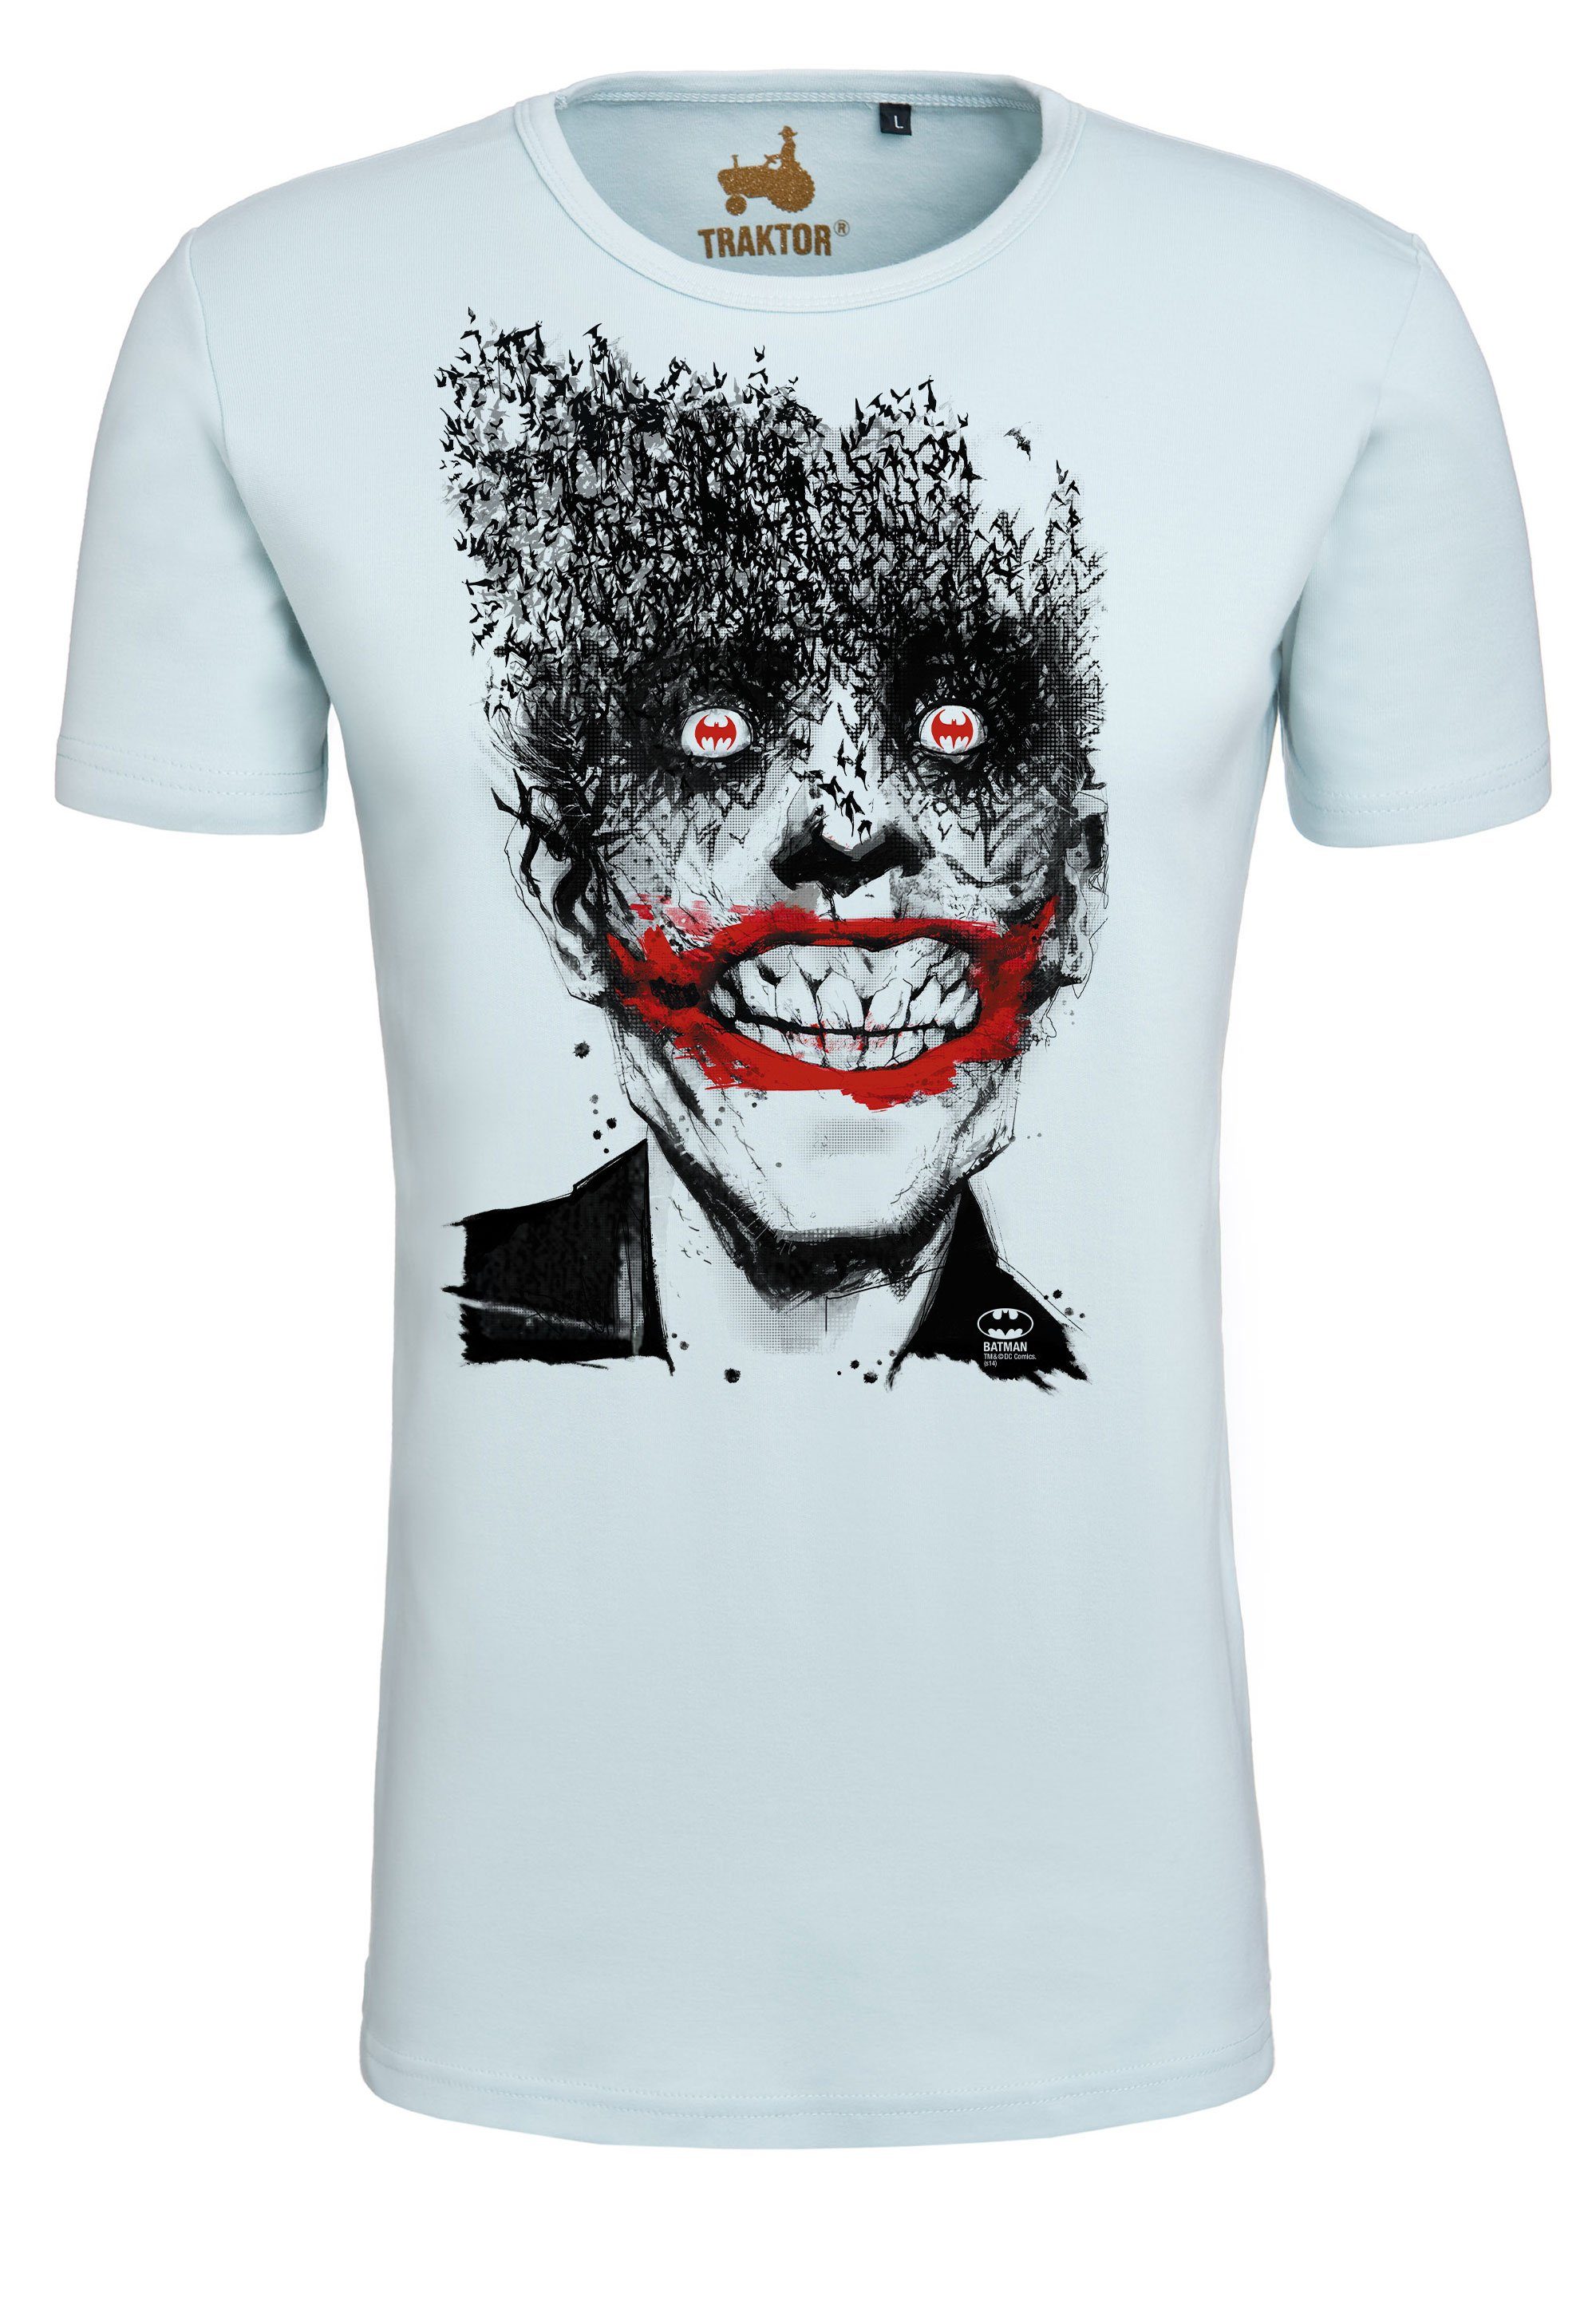 - LOGOSHIRT Superschurken-Print Bats mit Joker T-Shirt trendigem Batman